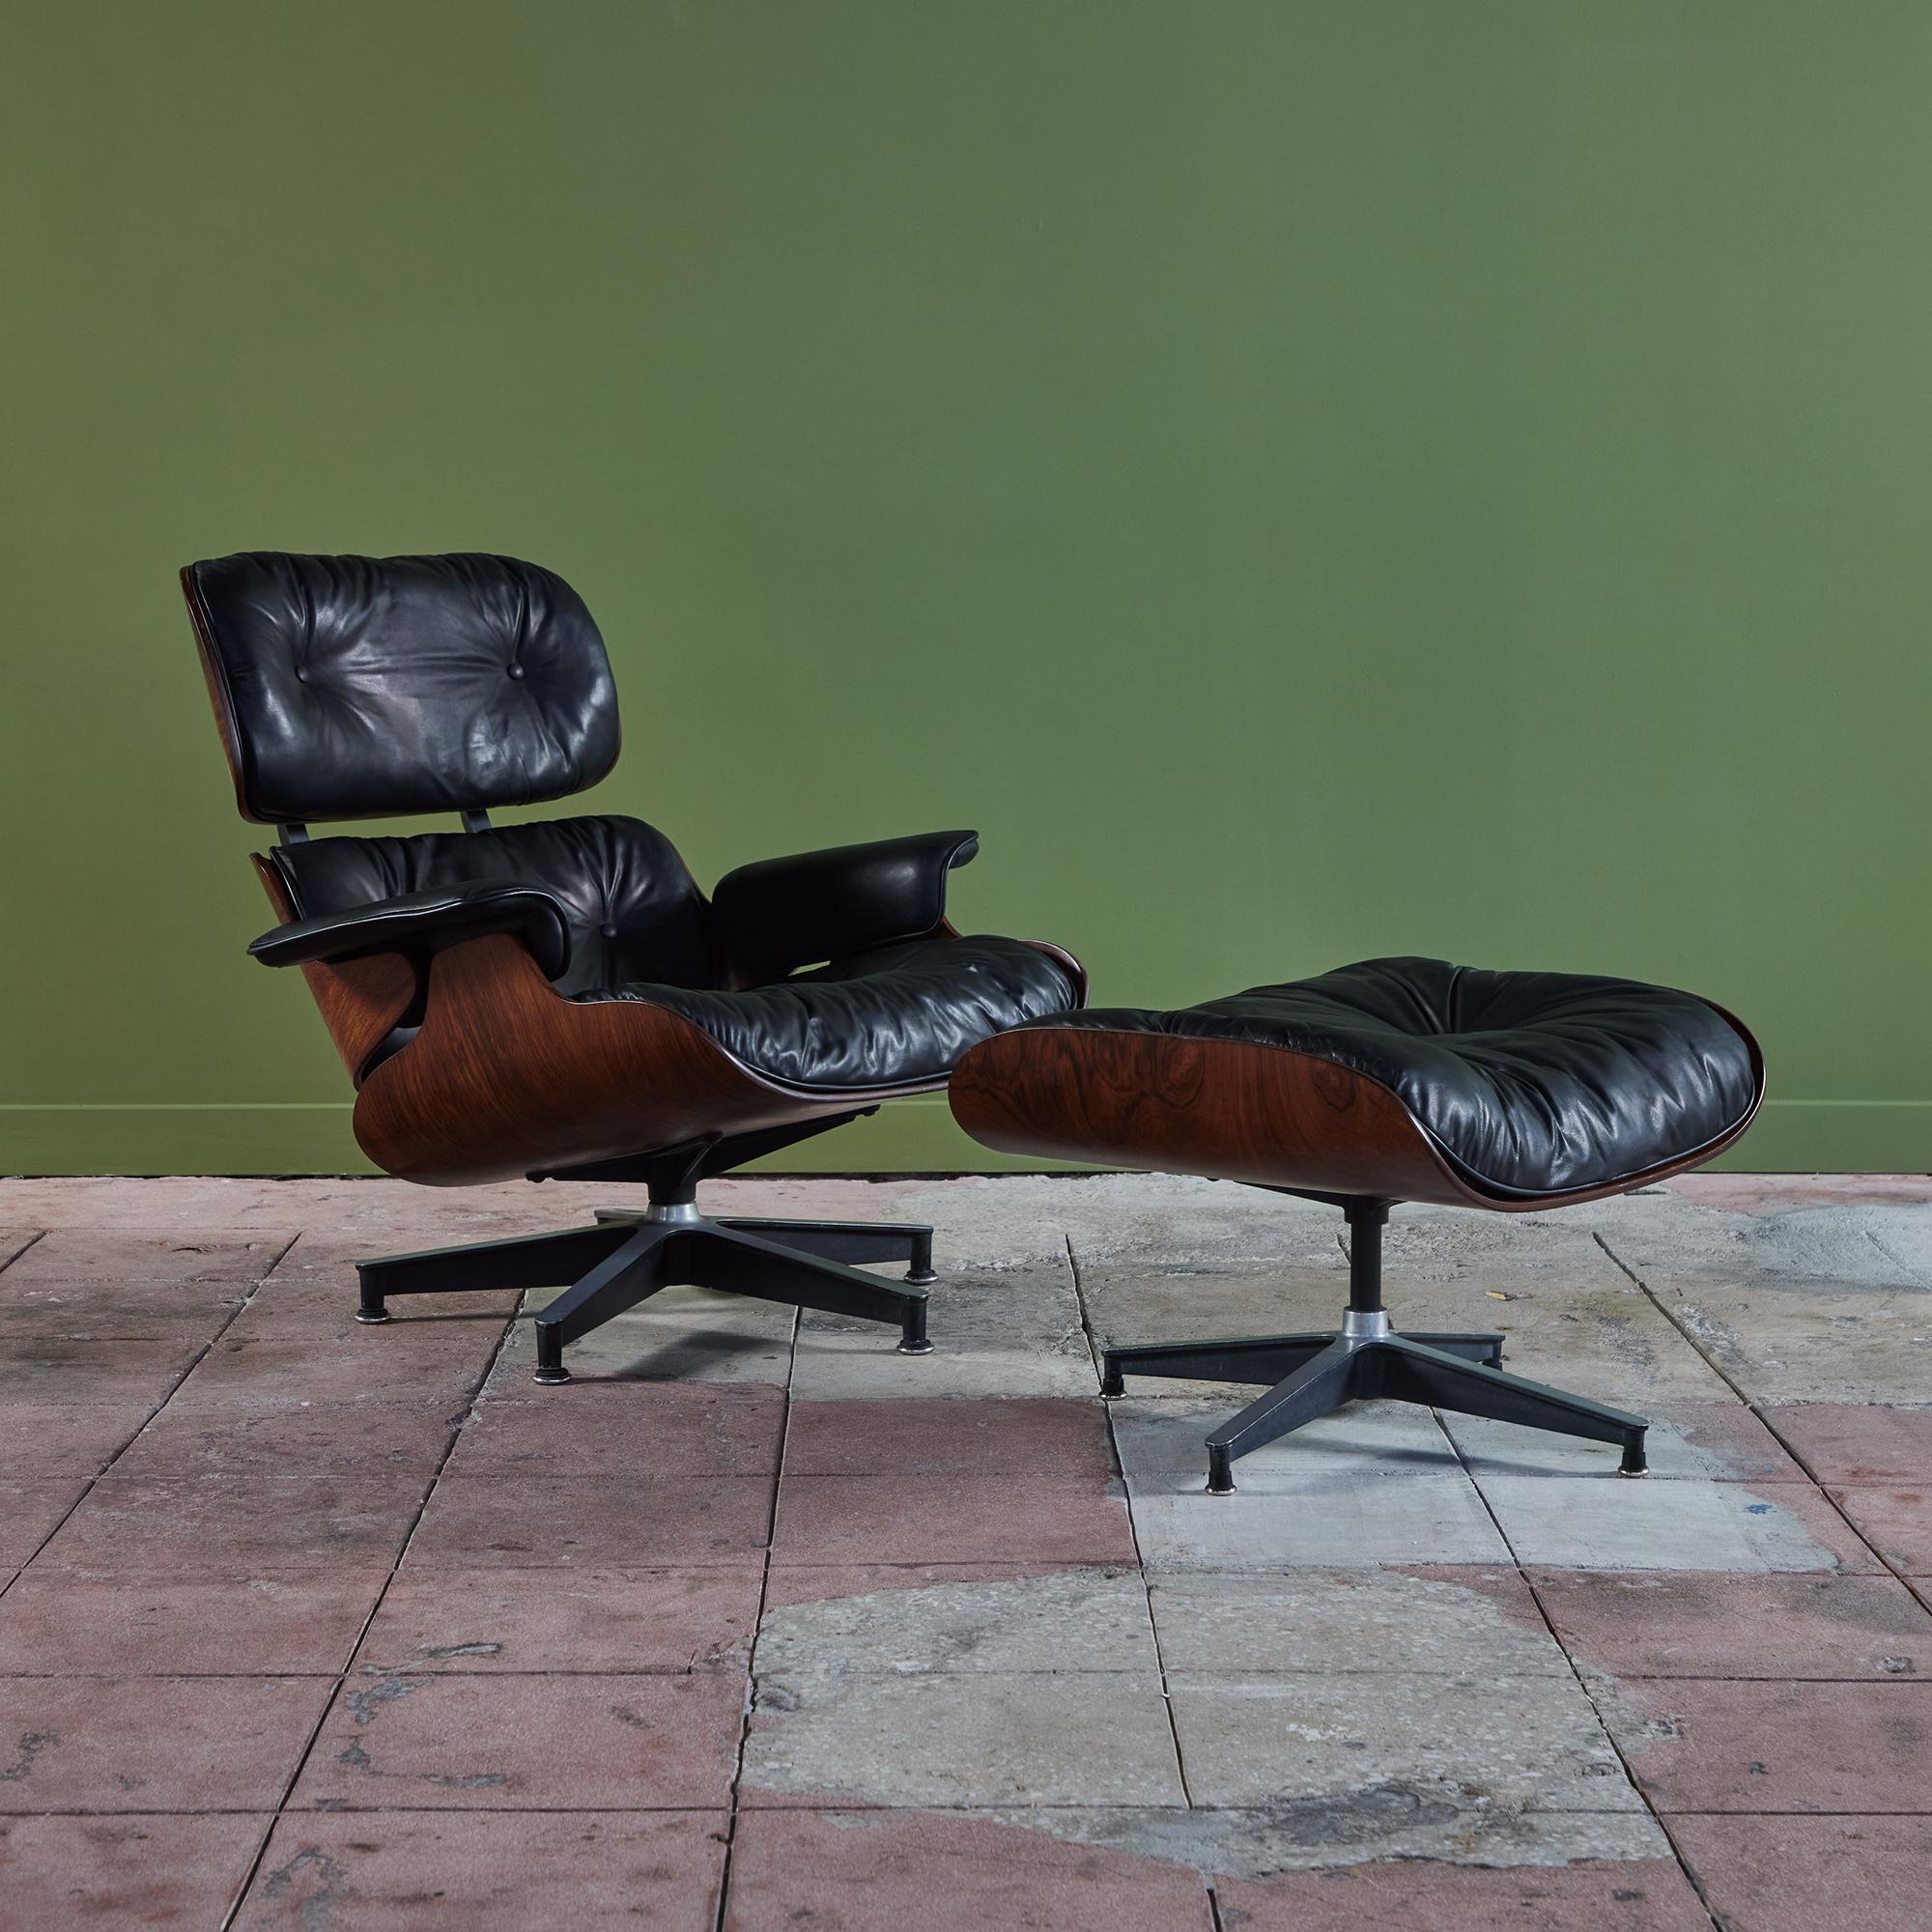 Rare exemplaire de 1956 de la première année de production de l'emblématique chaise longue 670/671 avec ottoman tournant de Ray et Charles Eames pour Herman Miller. L'ottoman rotatif n'a été fabriqué qu'au cours de la première phase de production,